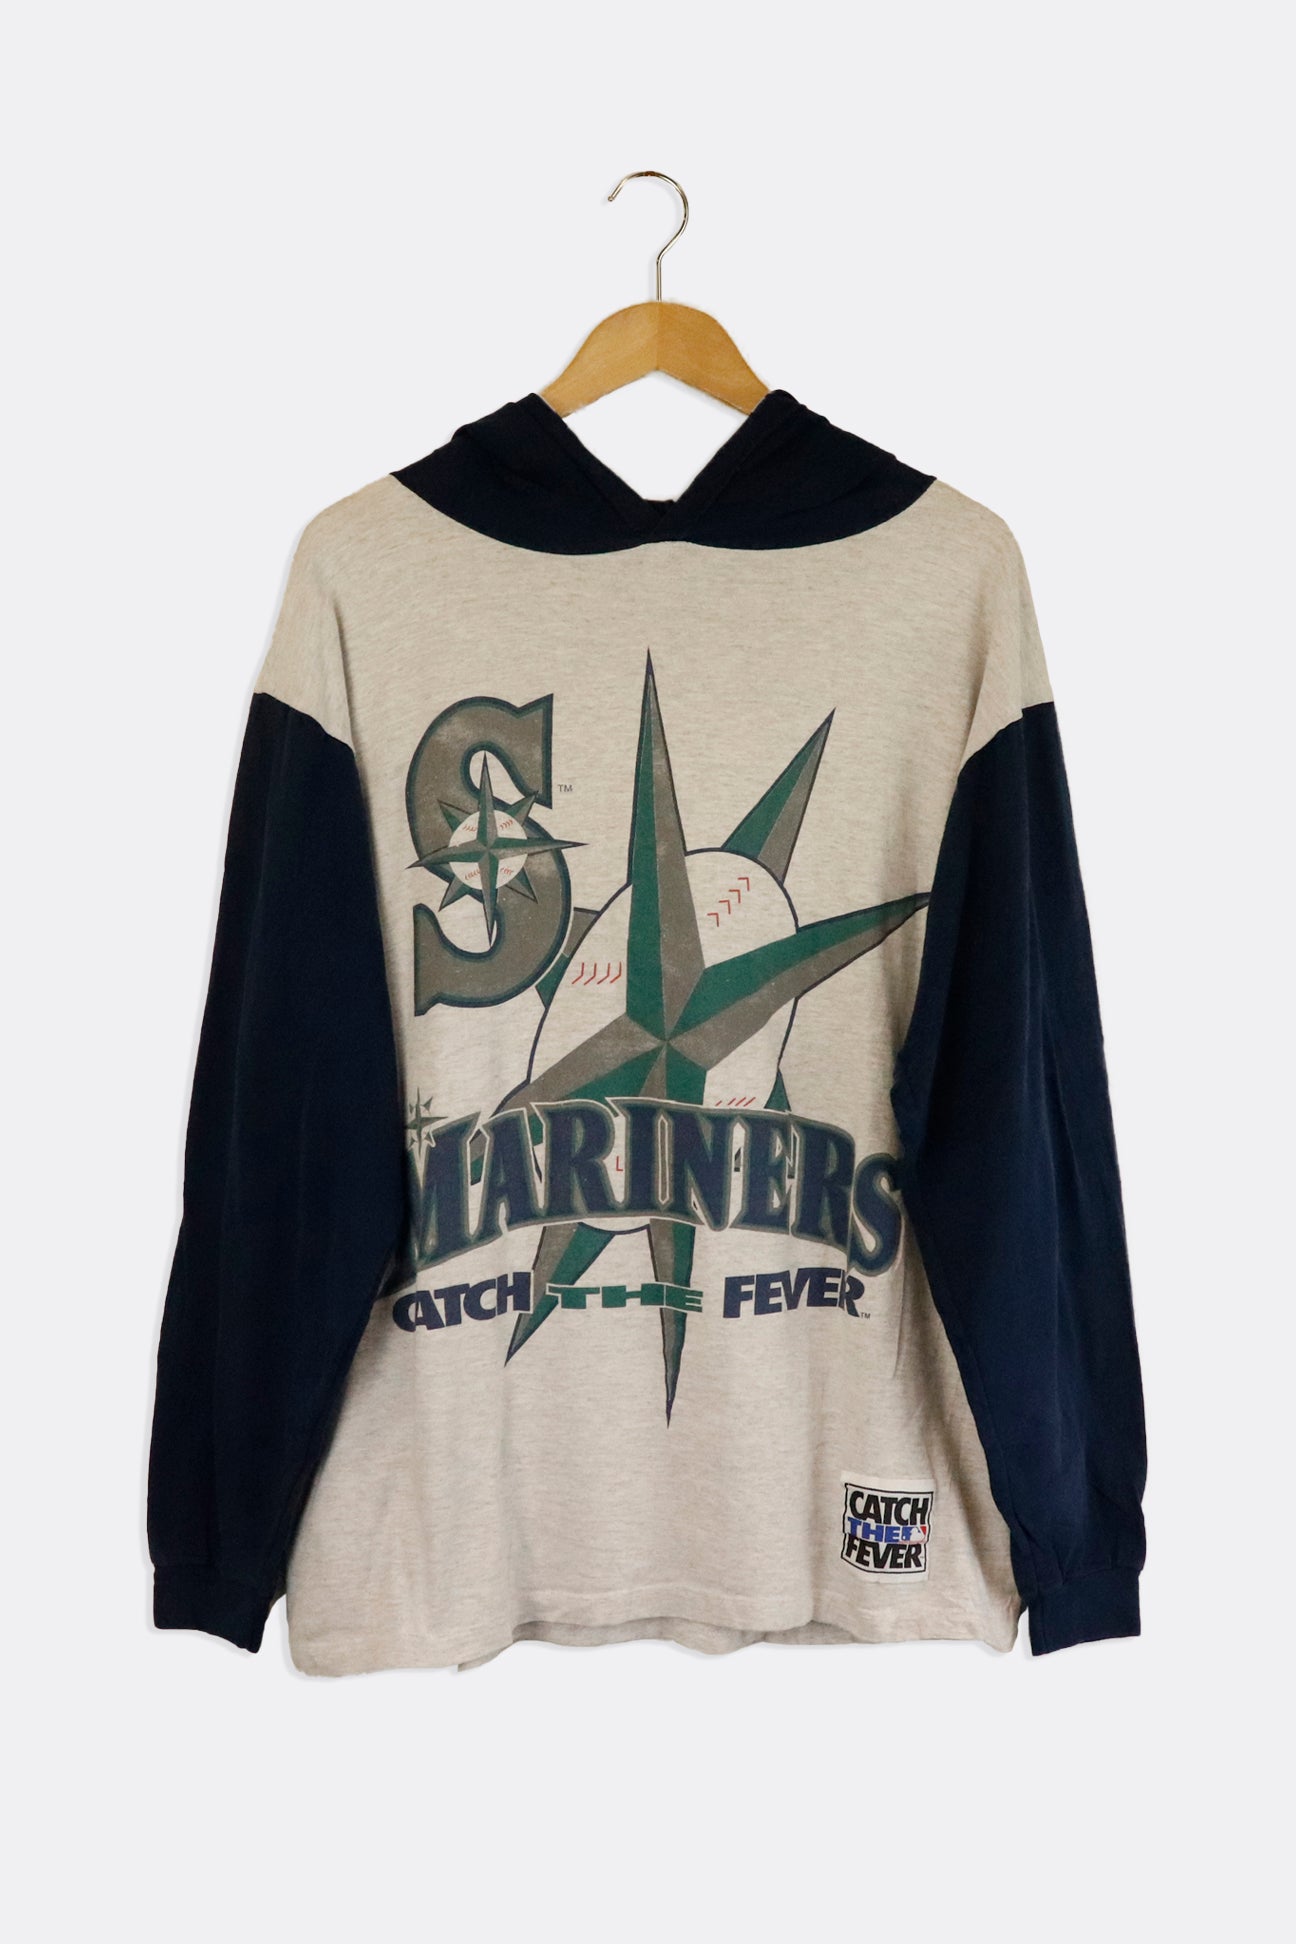 Tops, Vintage Seattle Mariners Sweatshirt